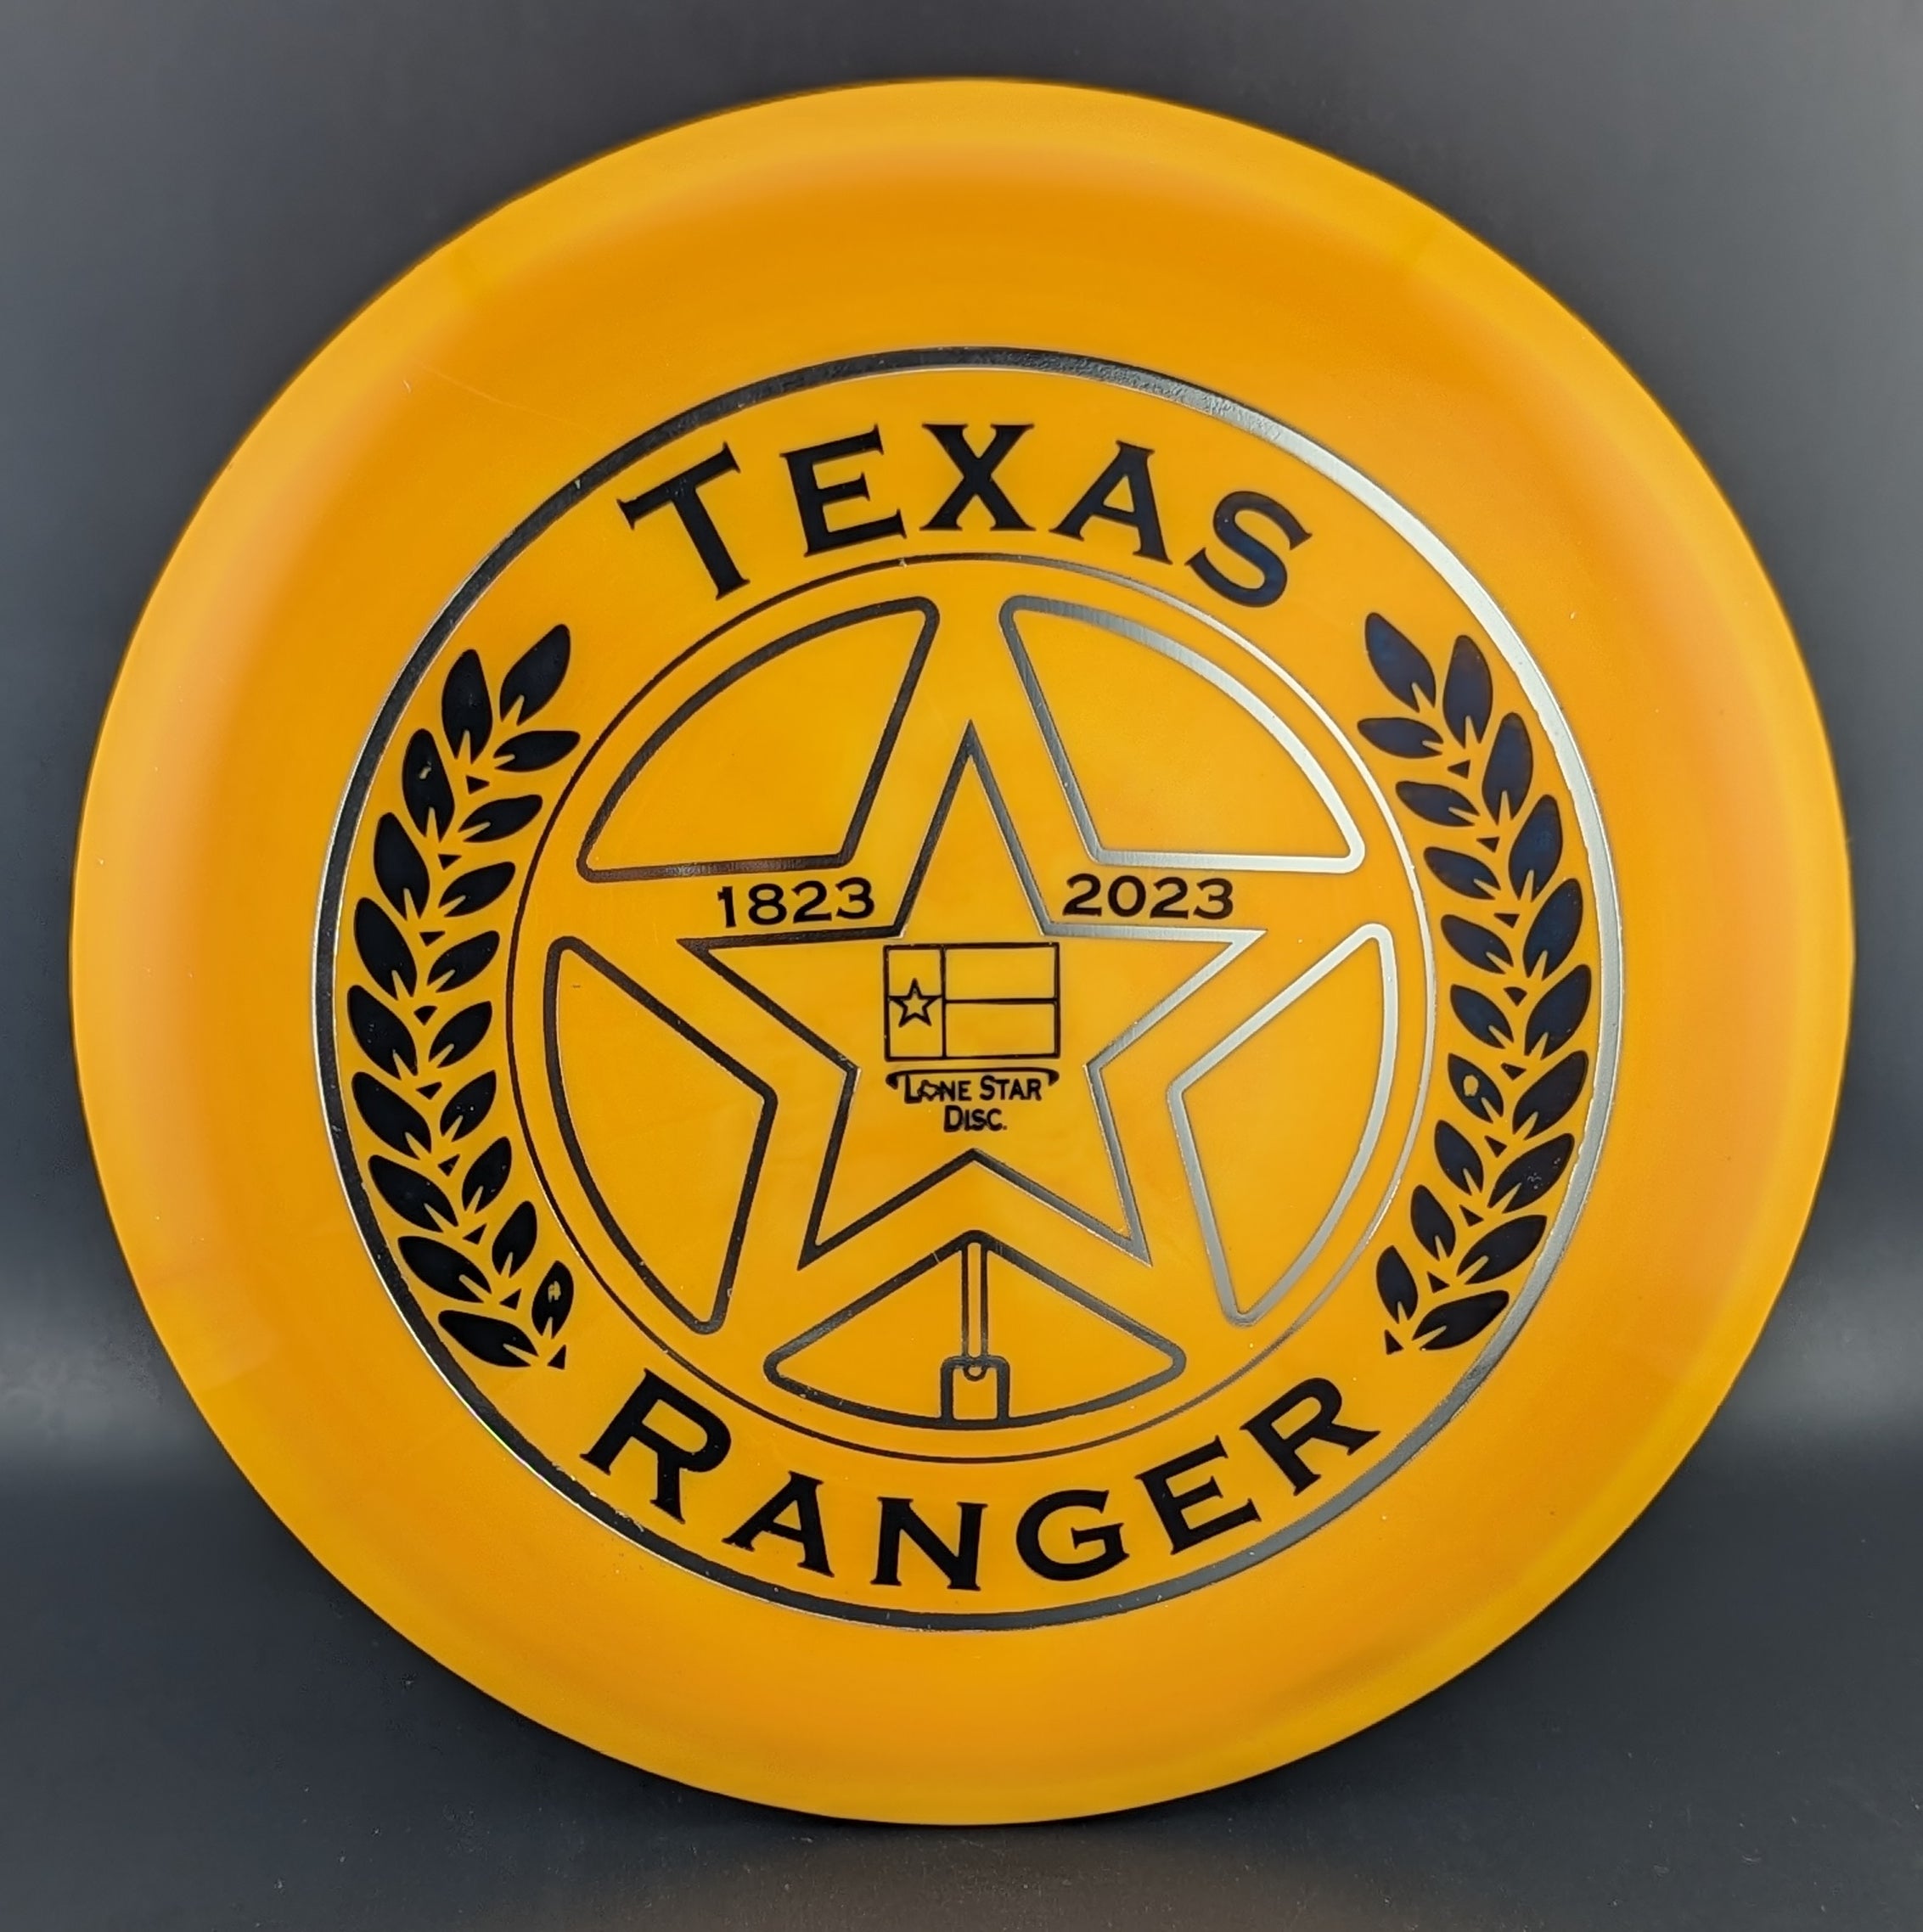 Lone Star Discs Bicentennial Series Alpha Texas Ranger